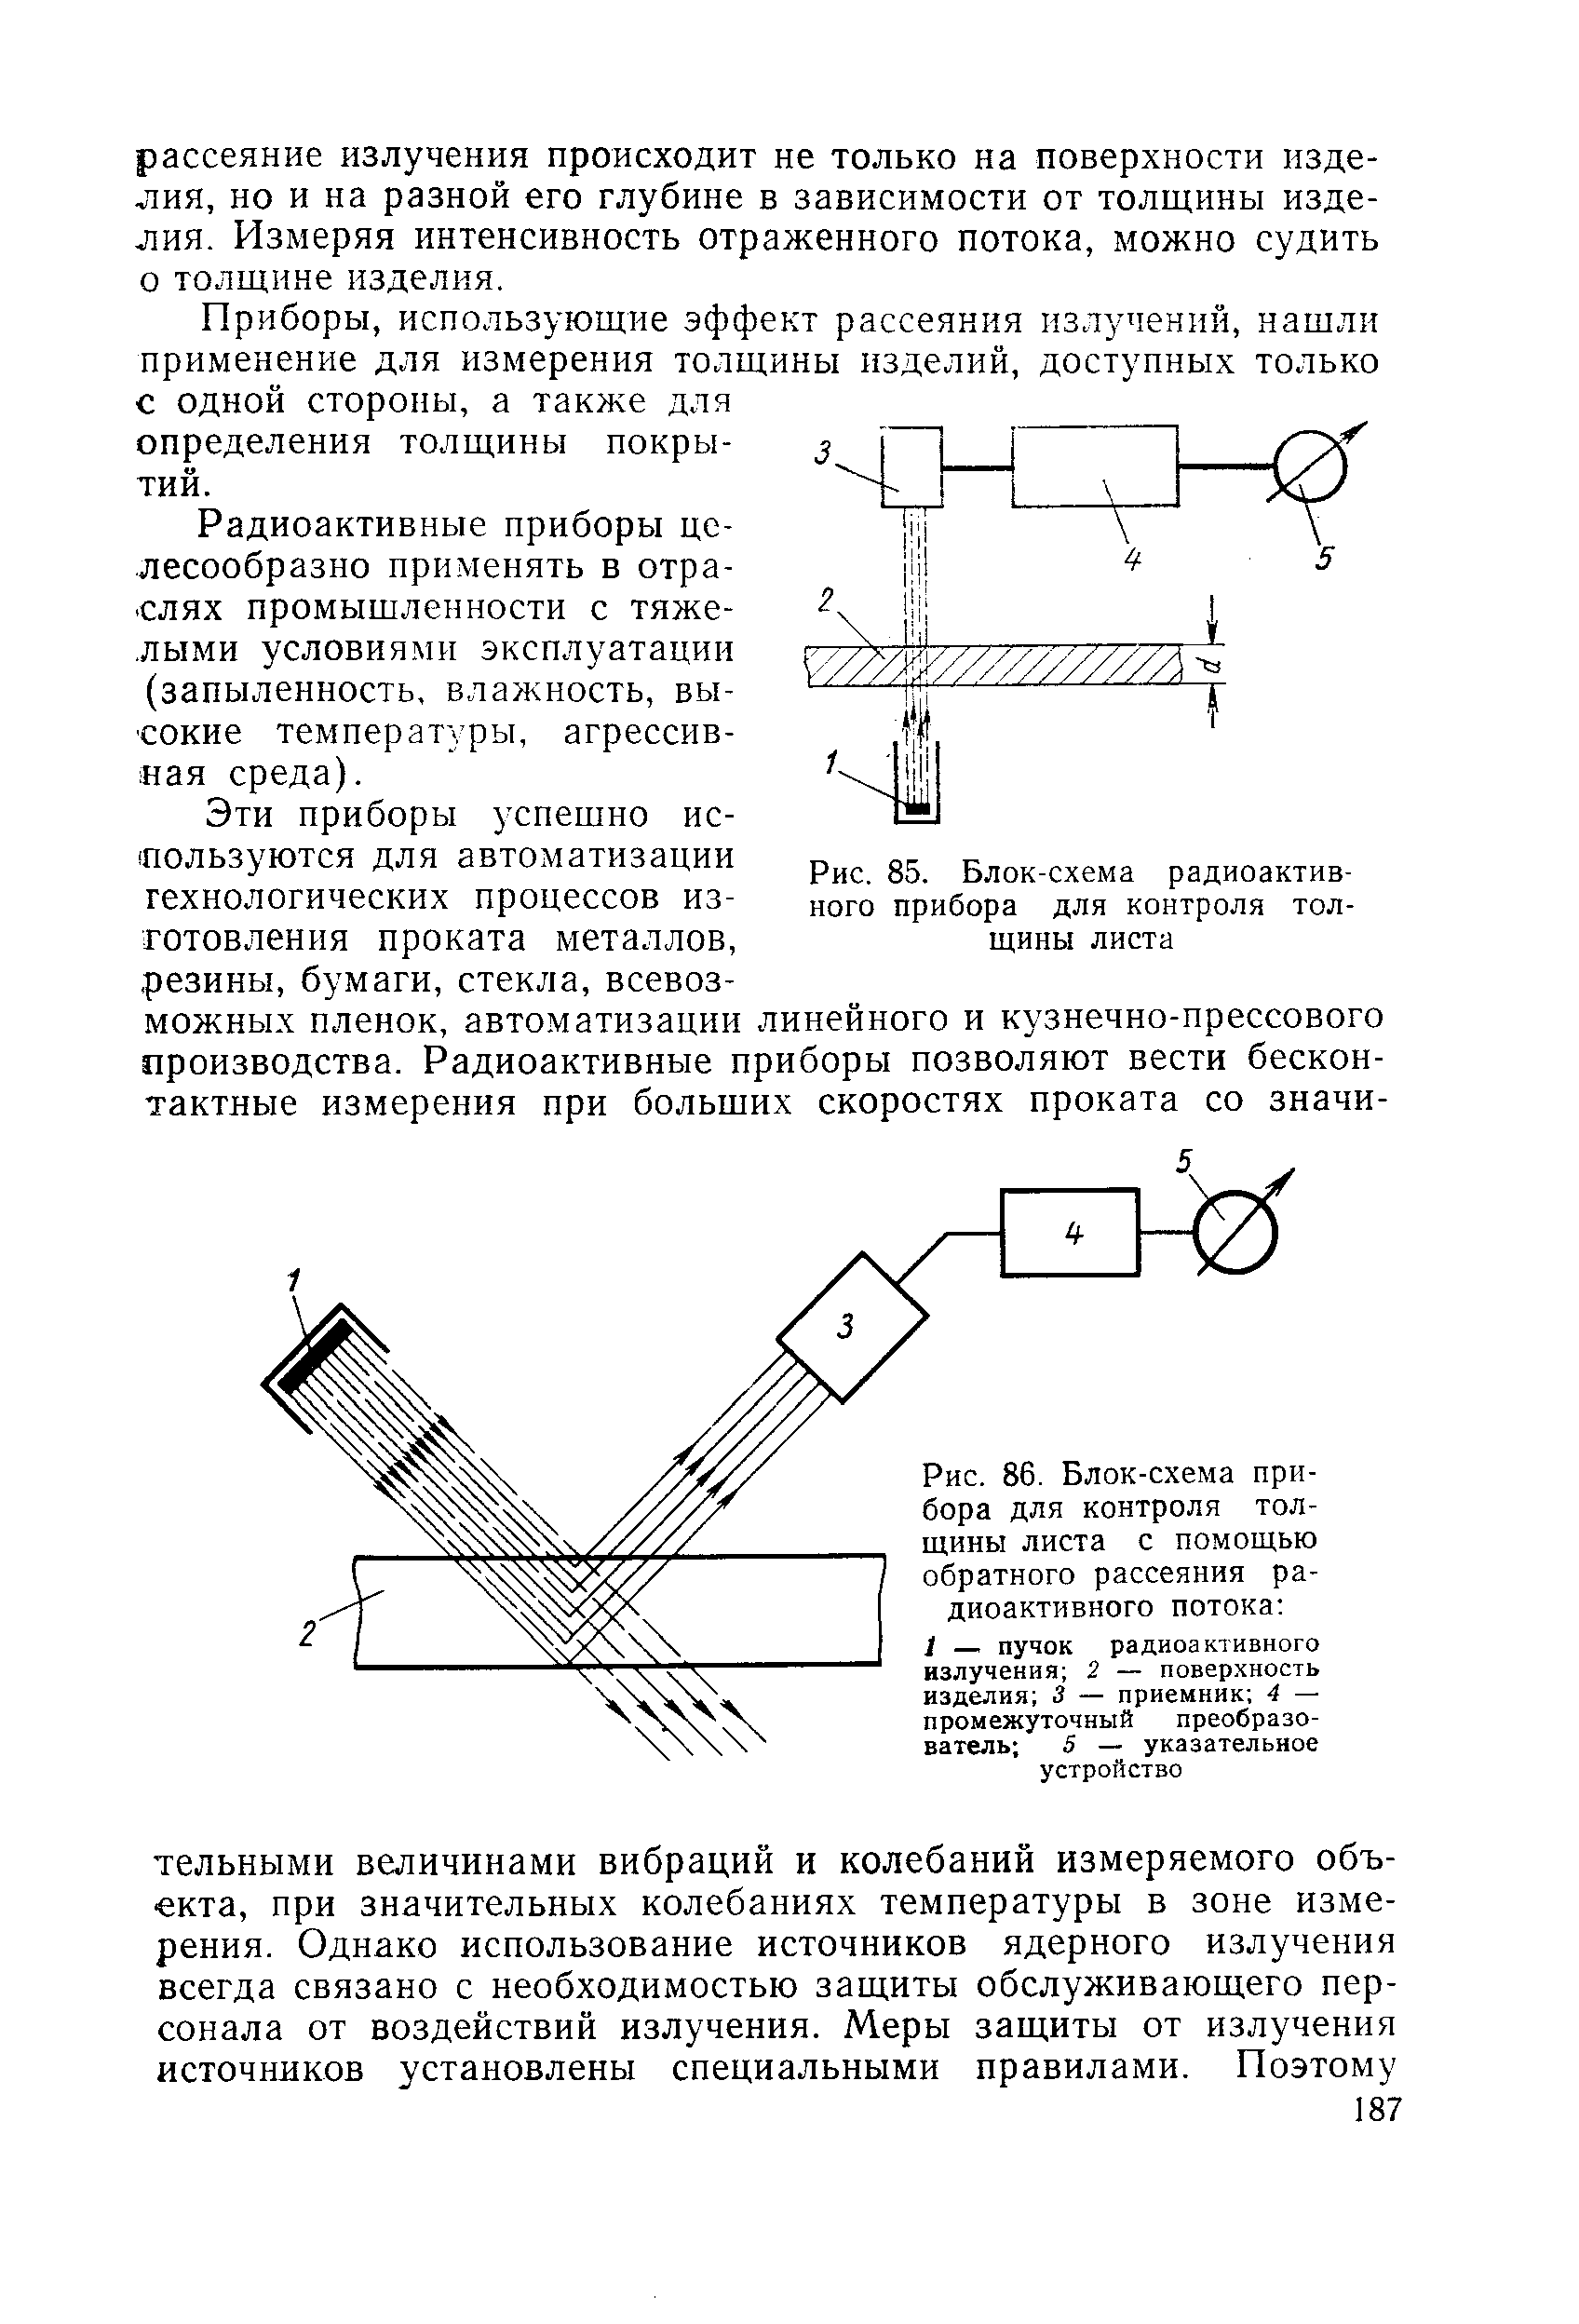 Рис. 85. Блок-схема радиоактивного прибора для контроля толщины листа
